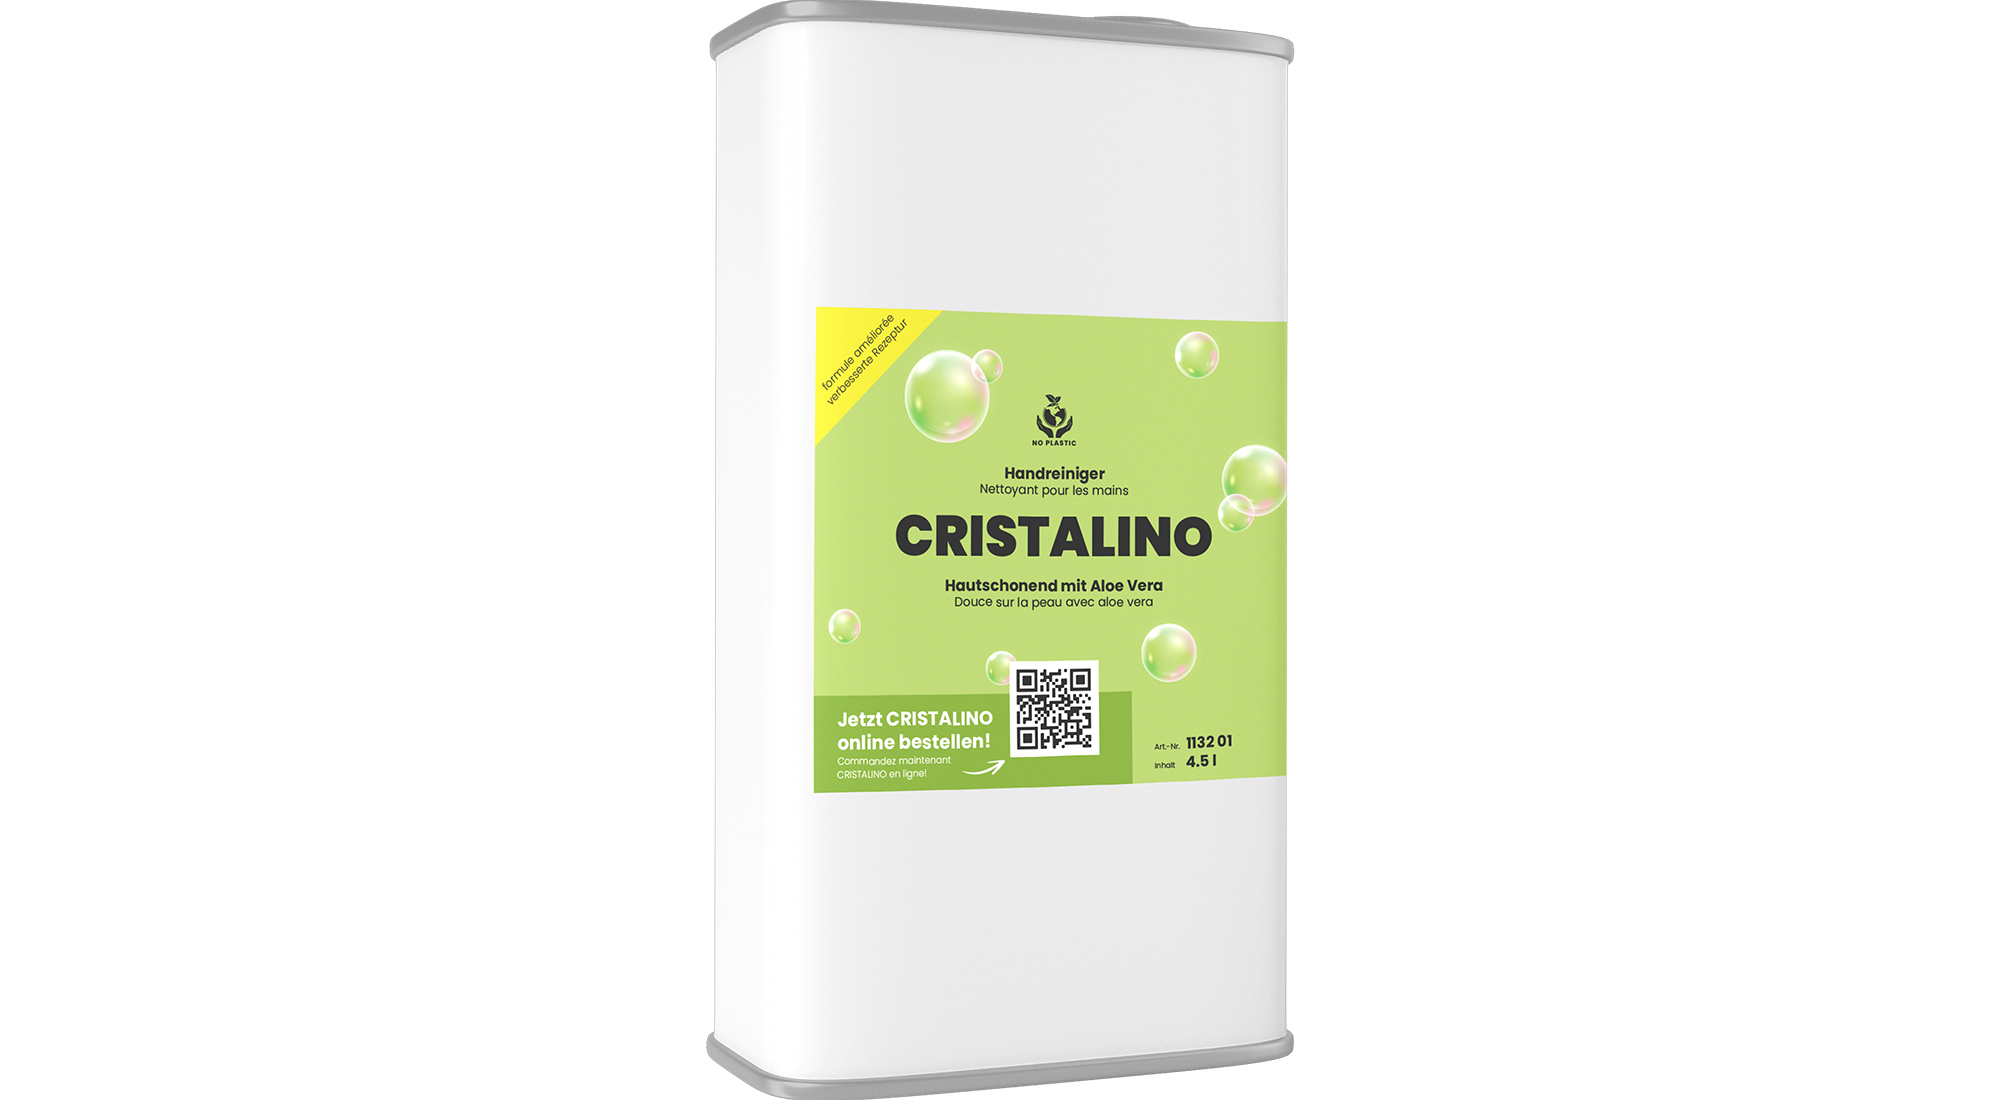 Handreiniger CRISTALINO, 4.5 l, Hautschonend mit Aloe Vera 